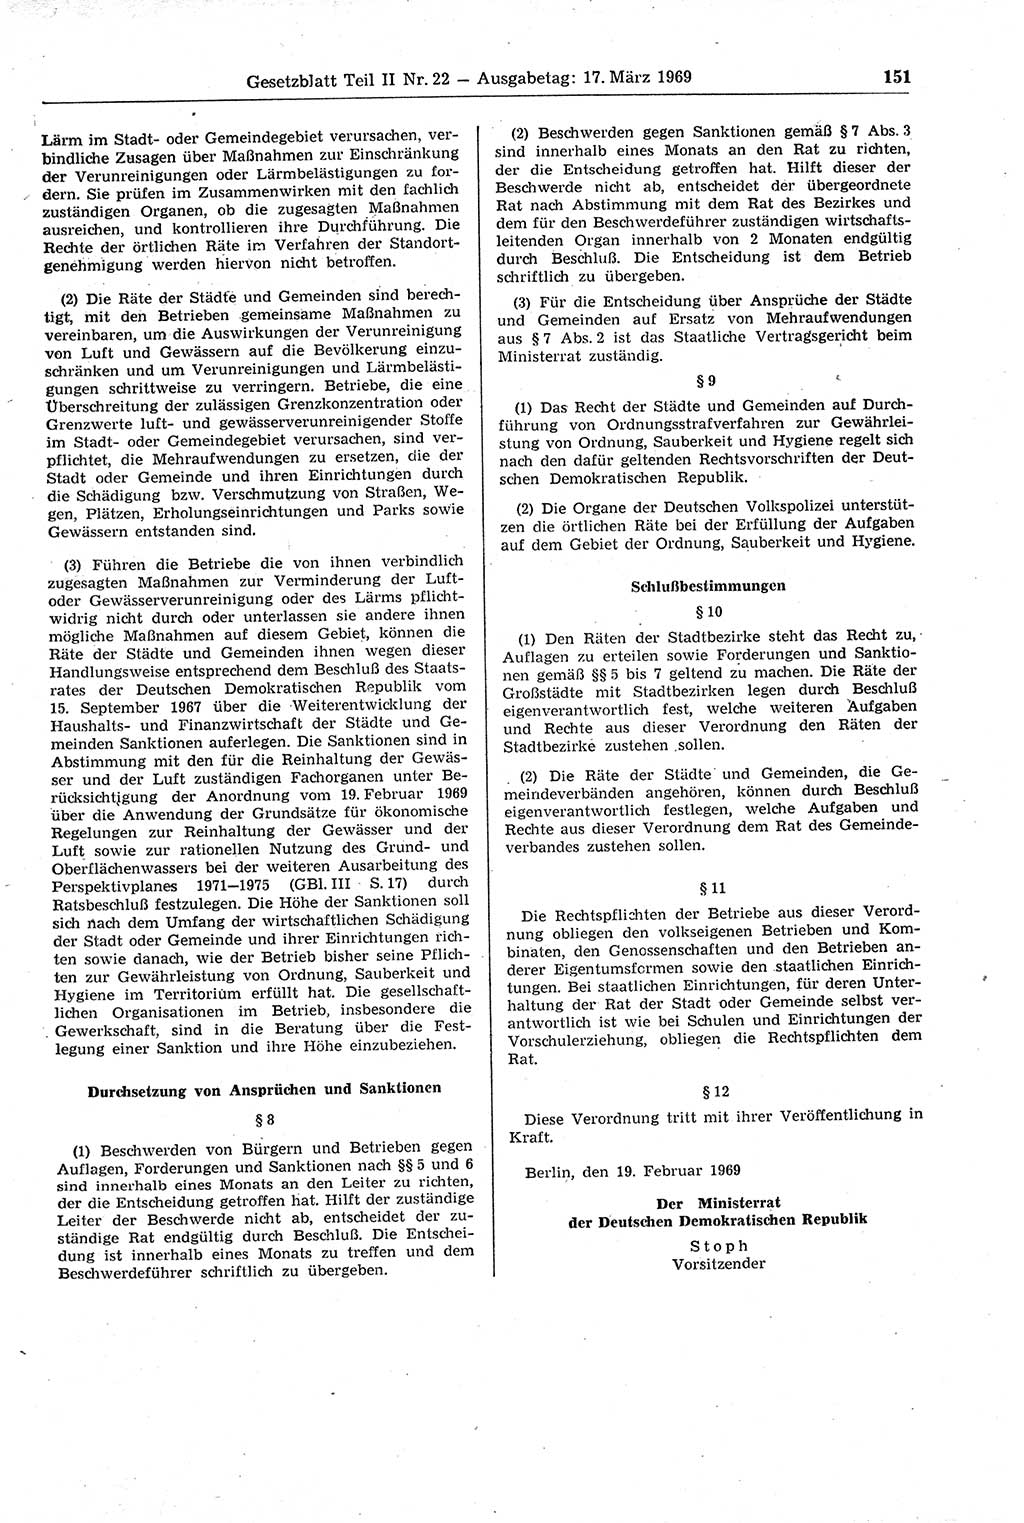 Gesetzblatt (GBl.) der Deutschen Demokratischen Republik (DDR) Teil ⅠⅠ 1969, Seite 151 (GBl. DDR ⅠⅠ 1969, S. 151)